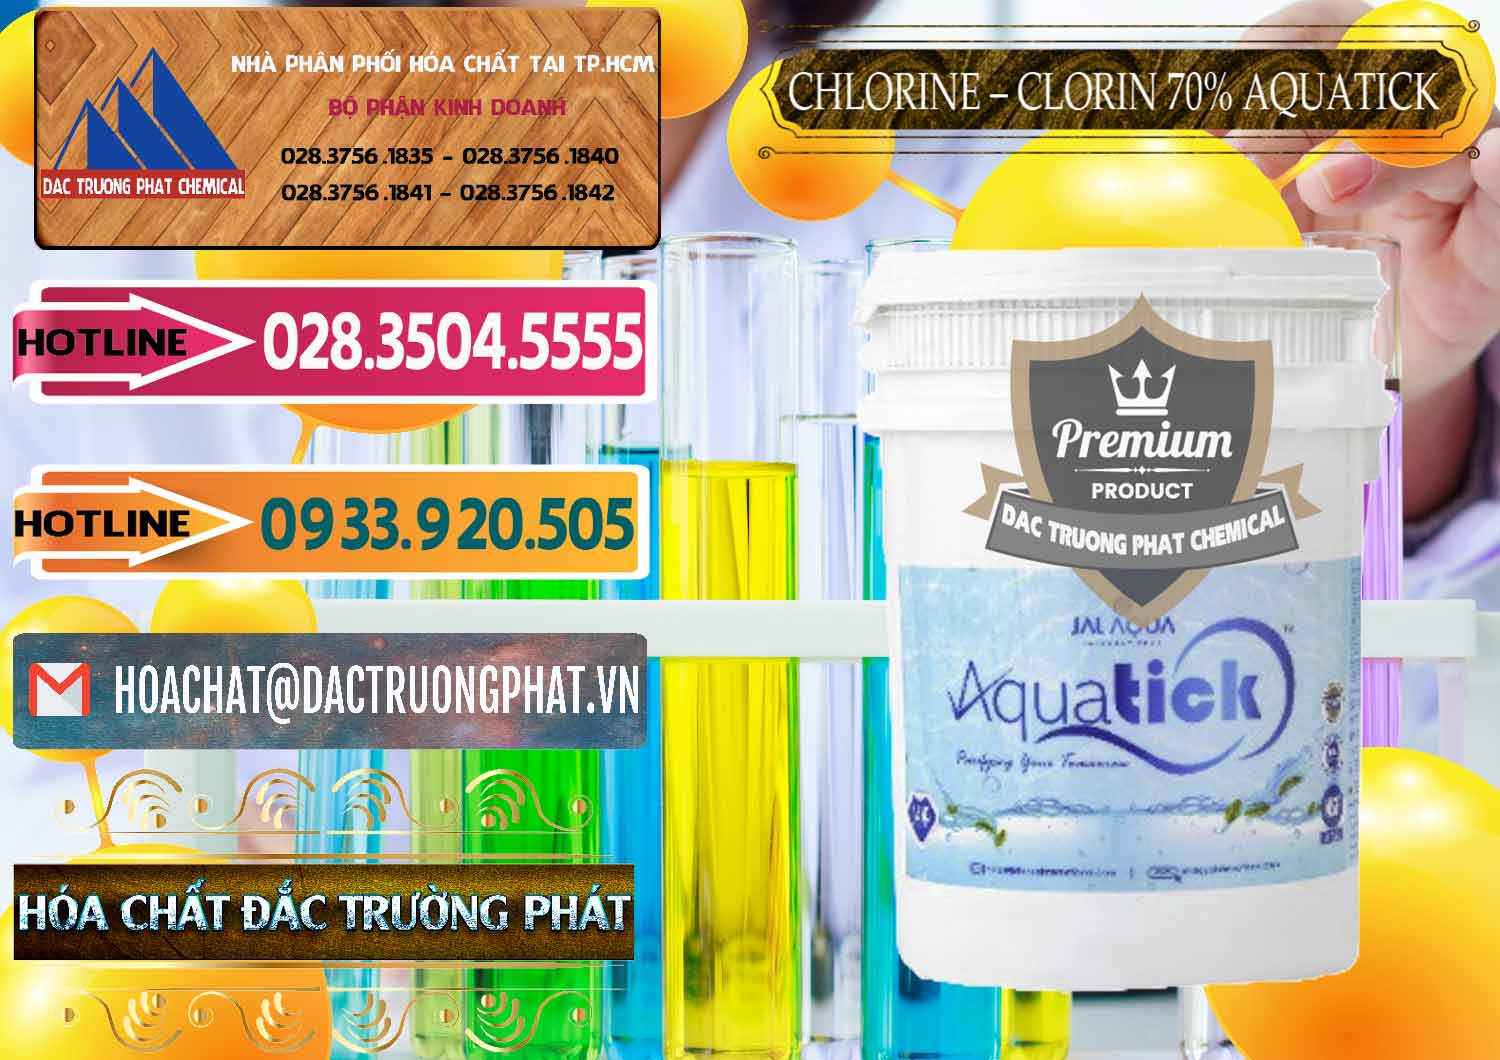 Cty bán - phân phối Chlorine – Clorin 70% Aquatick Thùng Cao Jal Aqua Ấn Độ India - 0237 - Nhà phân phối & cung cấp hóa chất tại TP.HCM - dactruongphat.vn